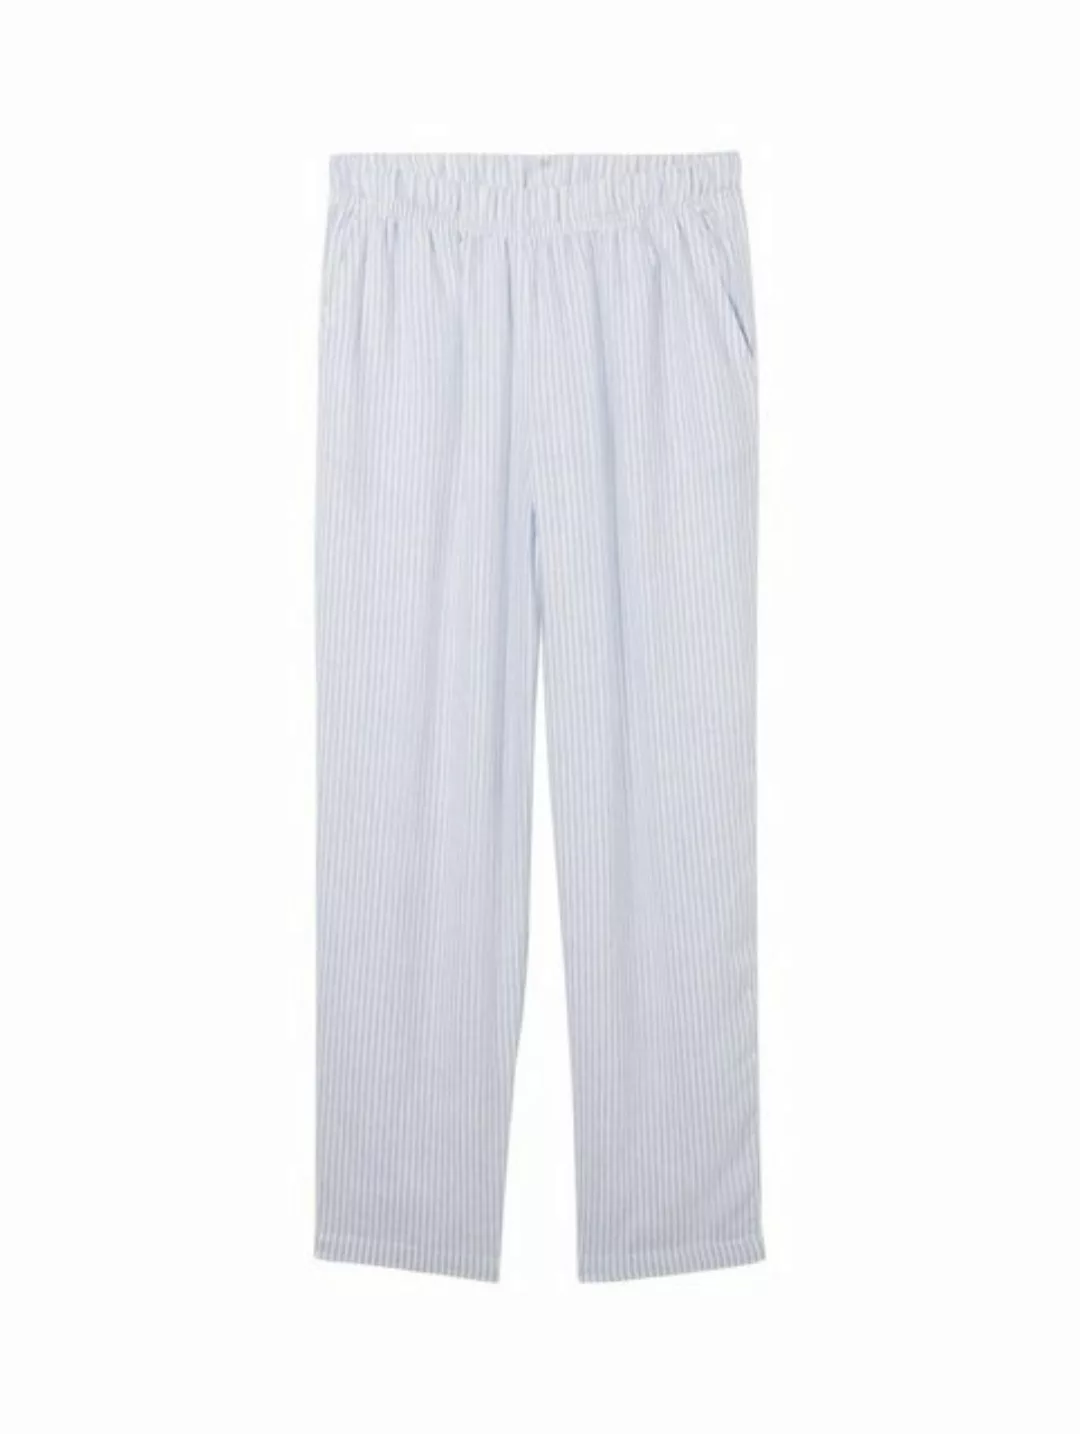 TOM TAILOR Denim Stoffhose linen tapered pants, light blue white small stri günstig online kaufen